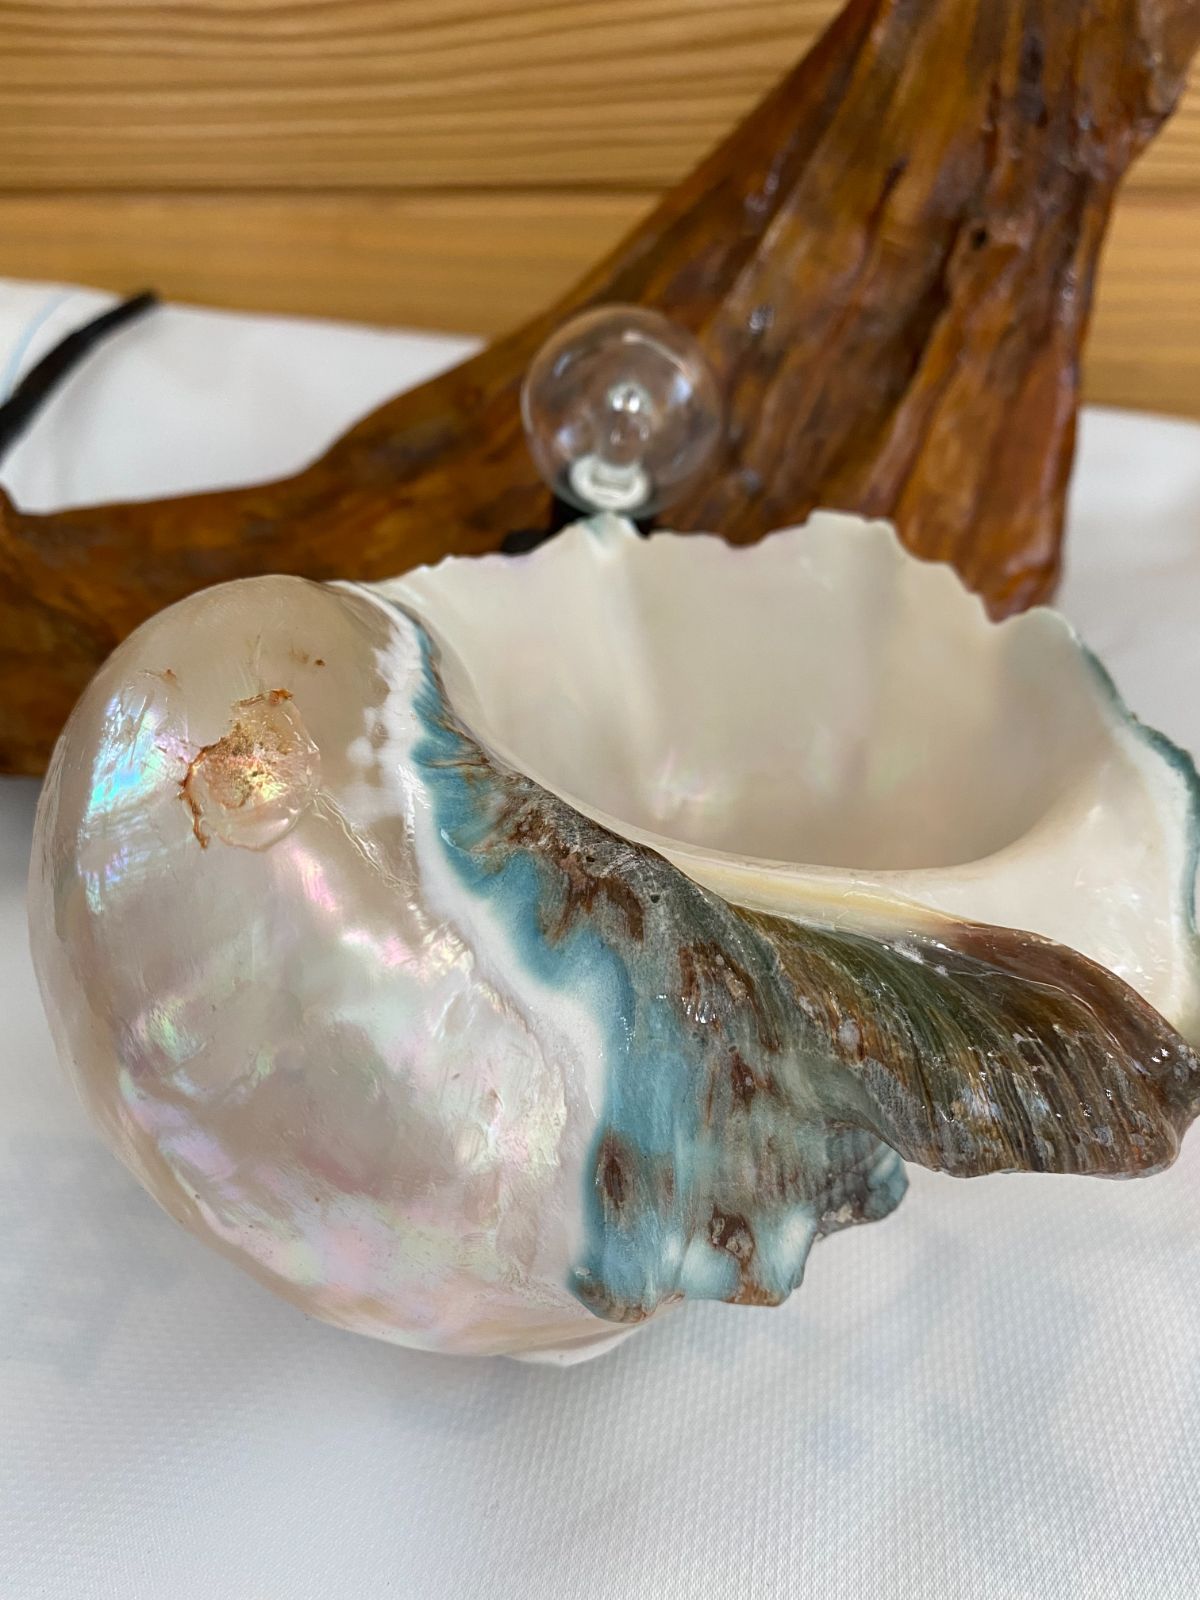 世界にひとつの輝き。奄美大島の夜光貝『シェルランプ』 - 置物